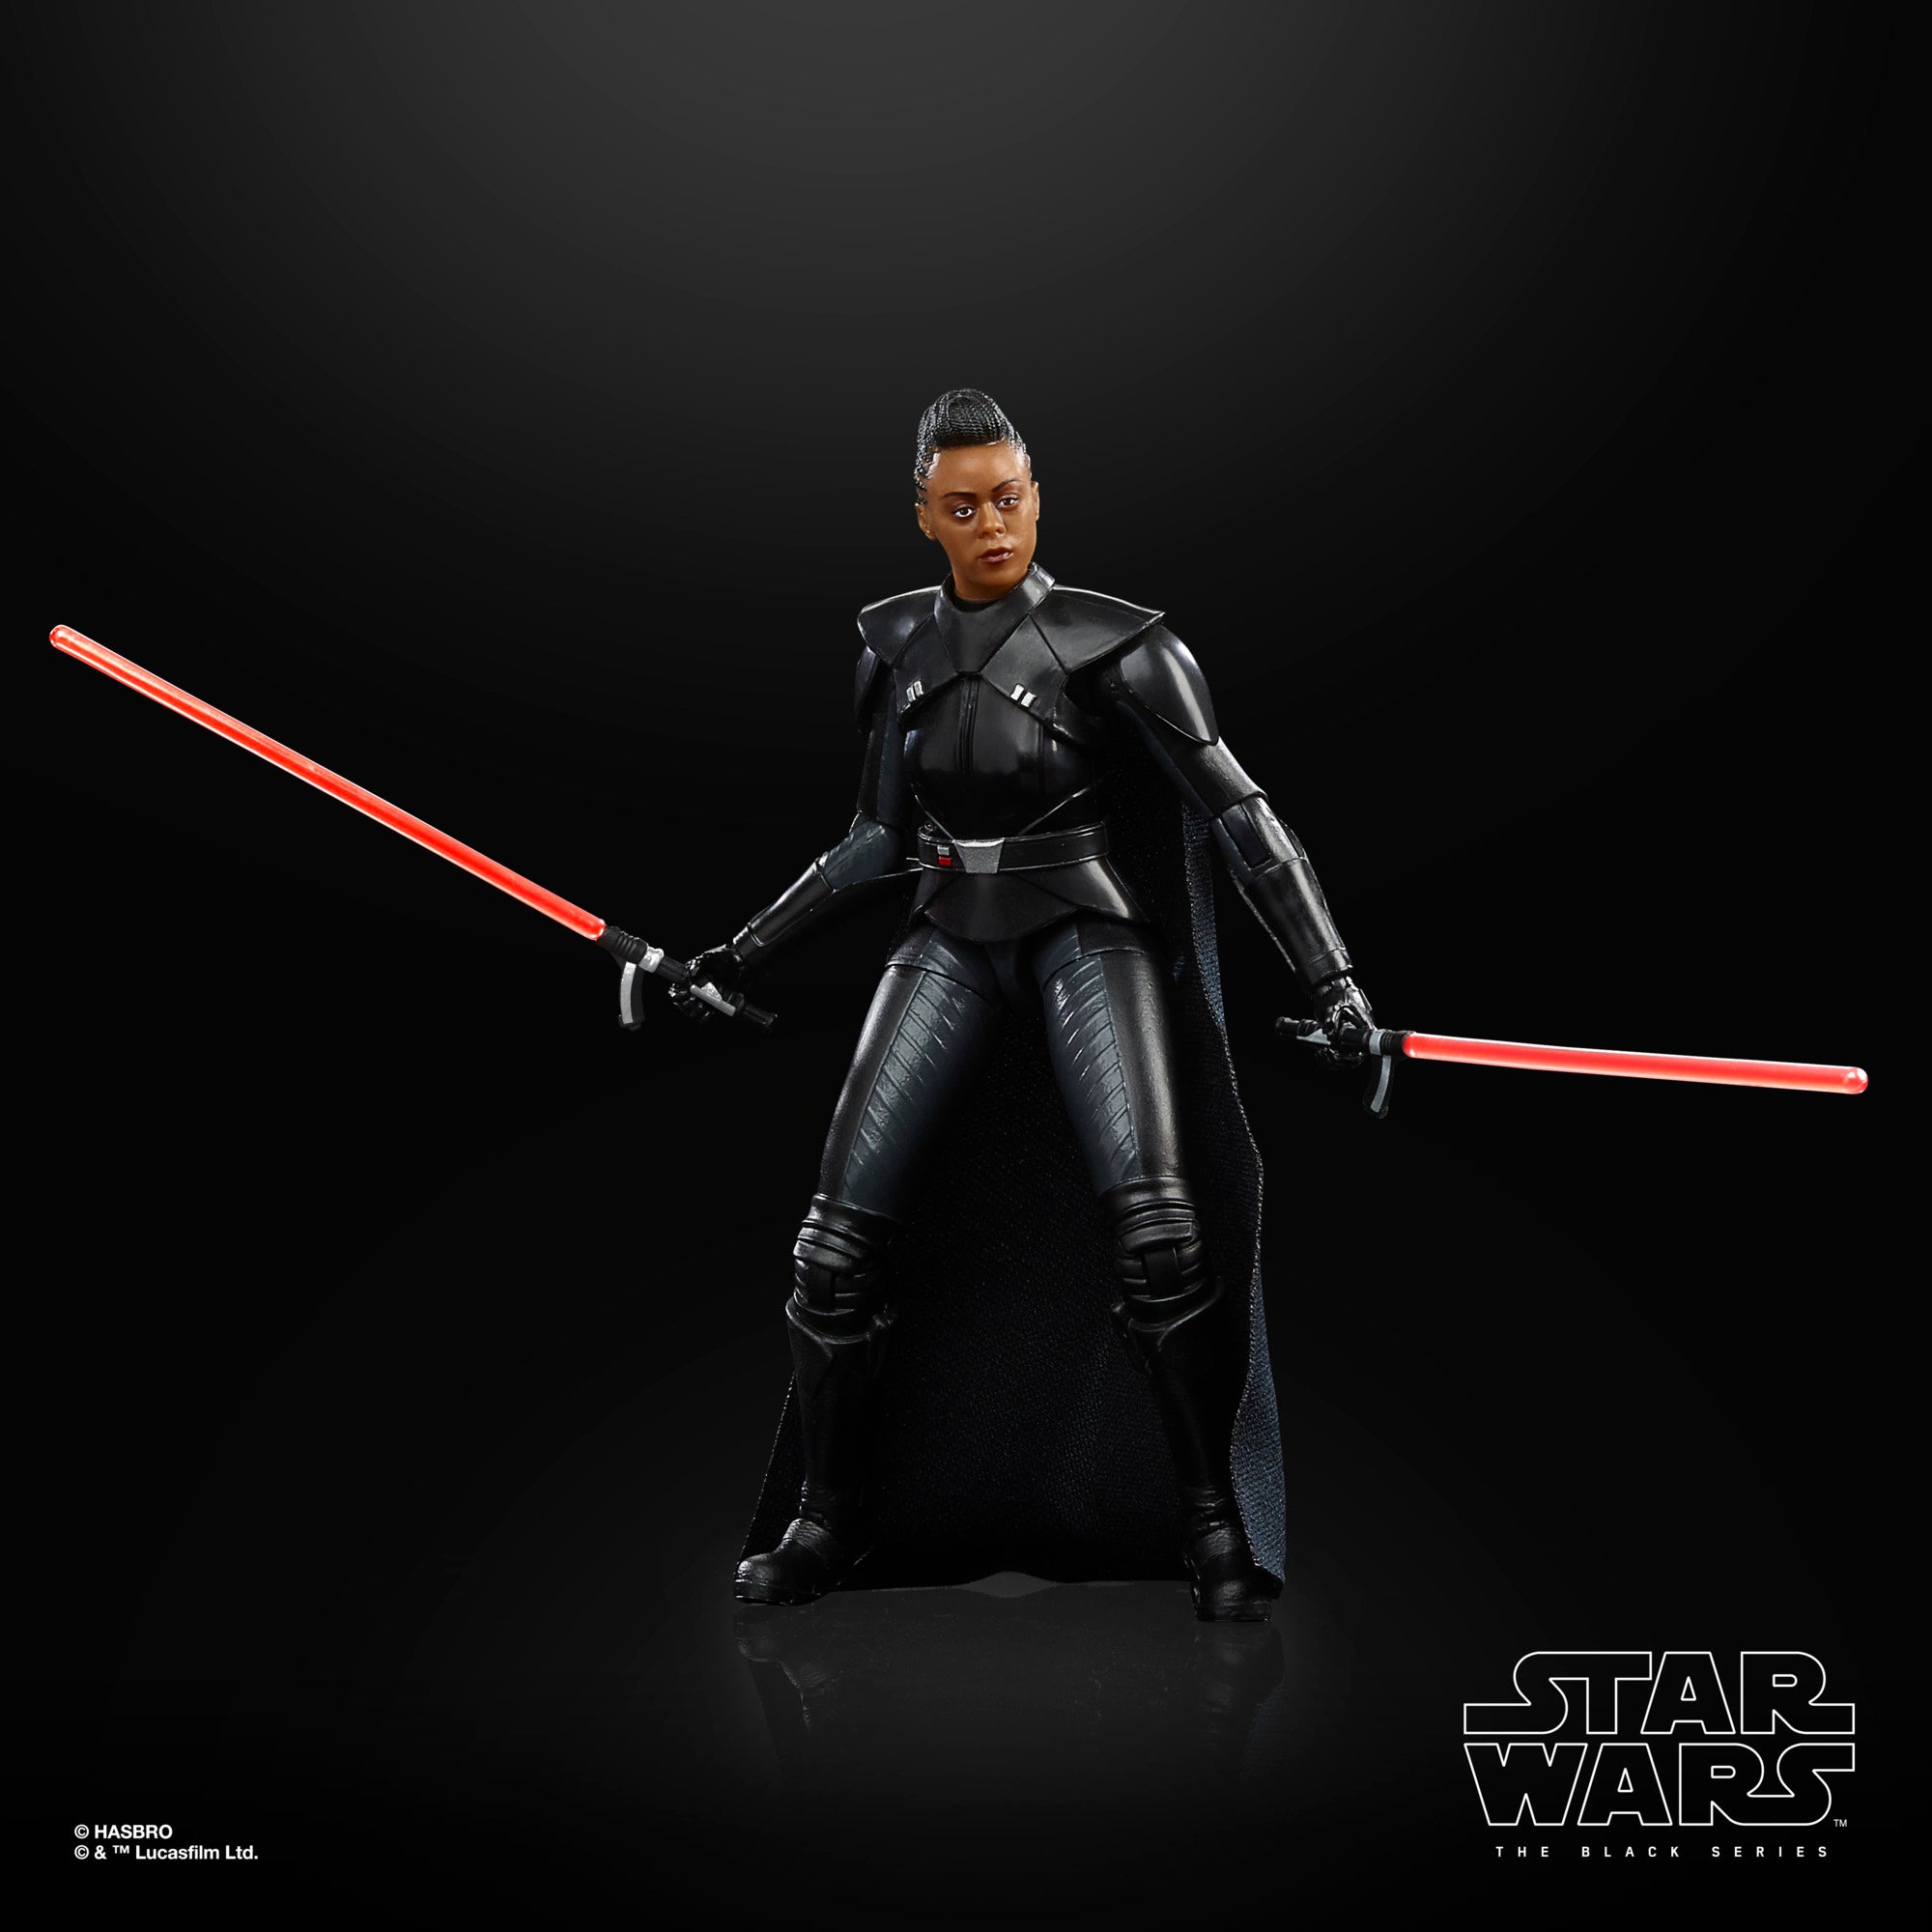 Star Wars The Black Series: Obi Wan Kenobi - Reva La Tercera Hermana